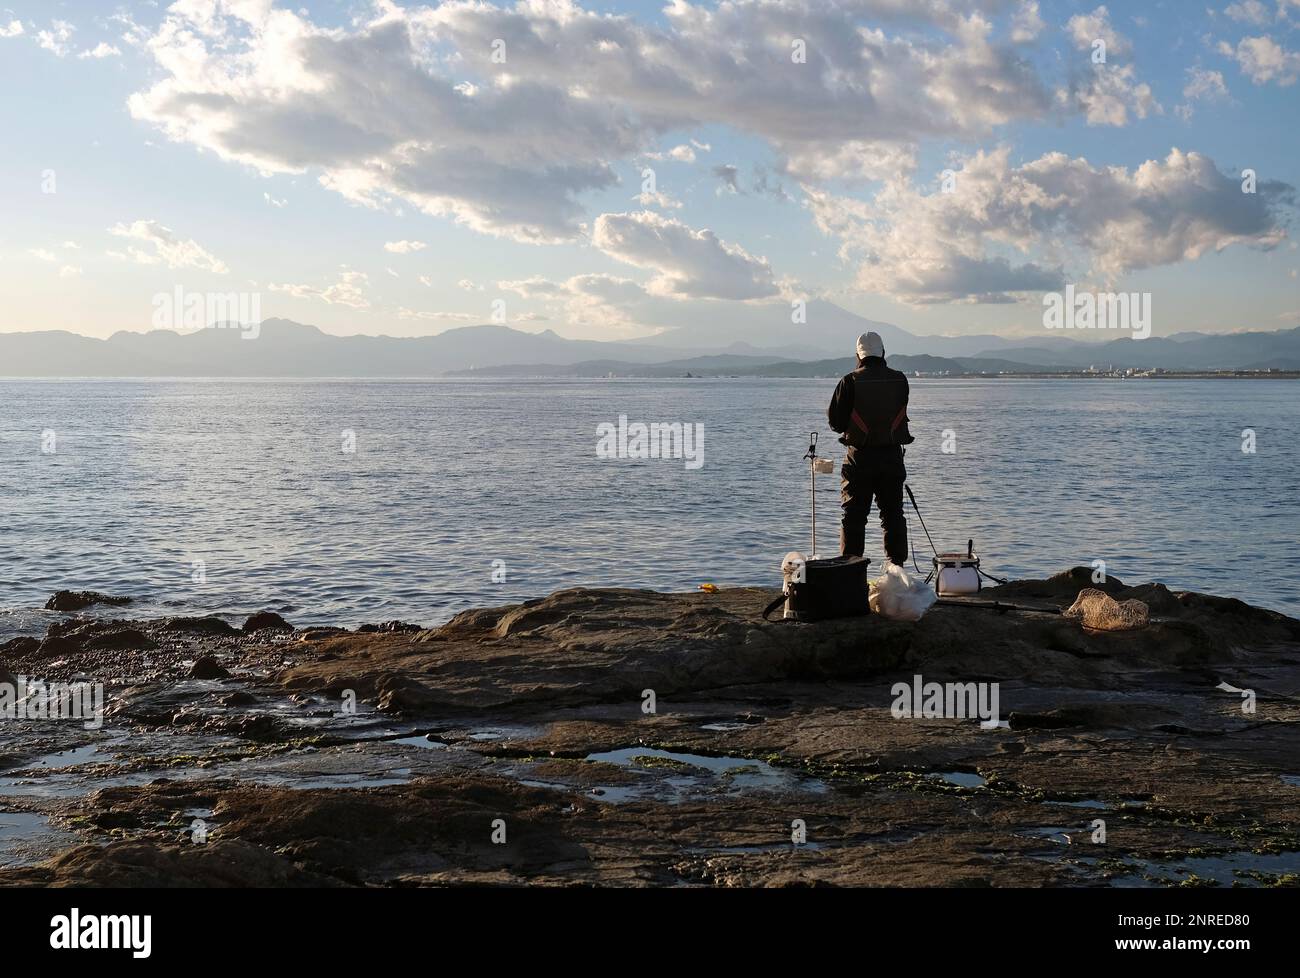 Spektakuläre Landschaften an der Küste von Enoshima, Japan, mit einem einzigen Fischer am Rand des Wassers Stockfoto